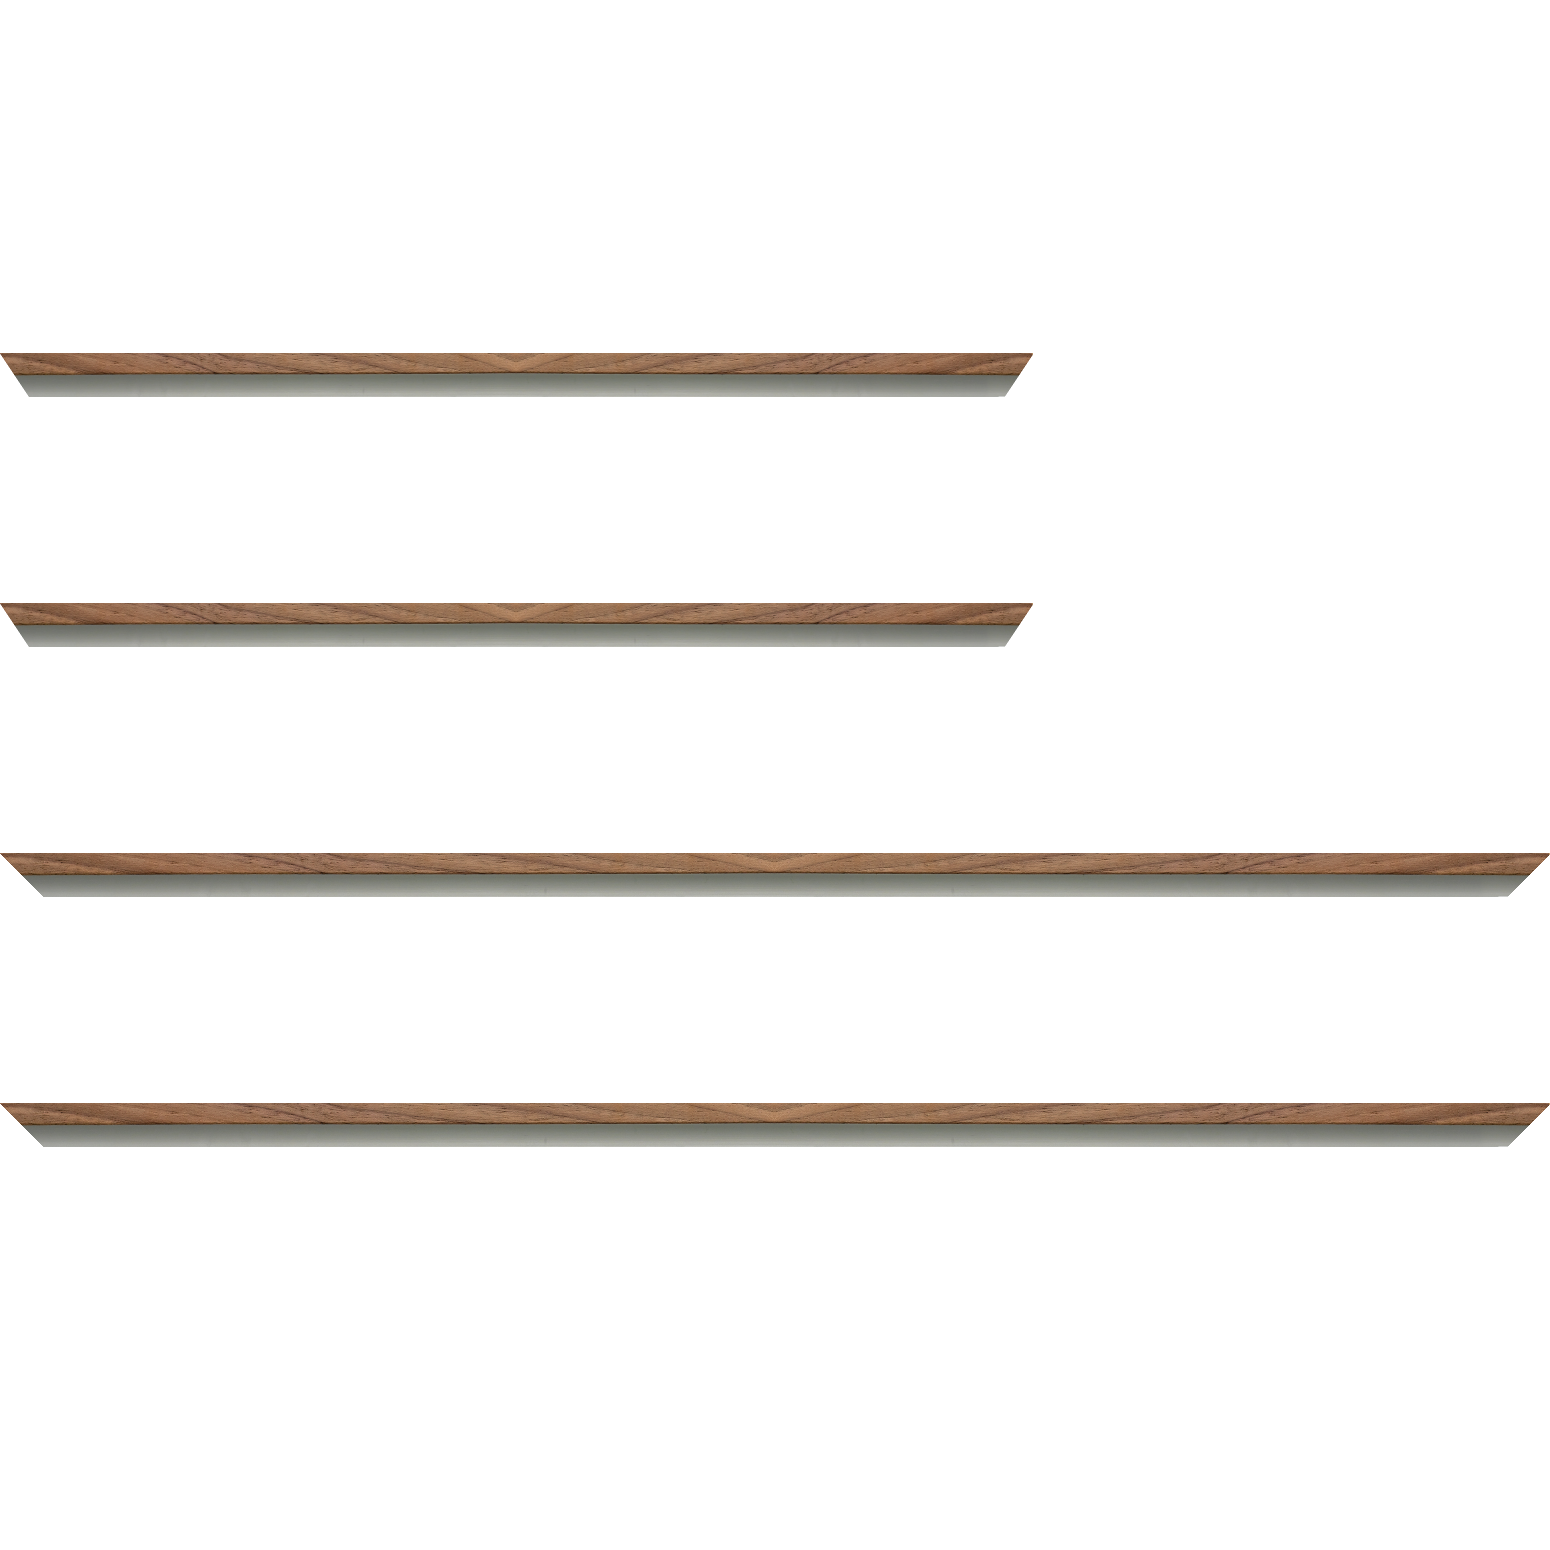 Baguette aluminium profil plat largeur 8mm, placage véritable noyer ,(le sujet qui sera glissé dans le cadre sera en retrait de 6mm de la face du cadre assurant un effet très contemporain) mise en place du sujet rapide et simple: assemblage du cadre par double équerre à vis (livré avec le système d'accrochage qui se glisse dans le profilé) encadrement non assemblé,  livré avec son sachet d'accessoires - 84.1x118.9